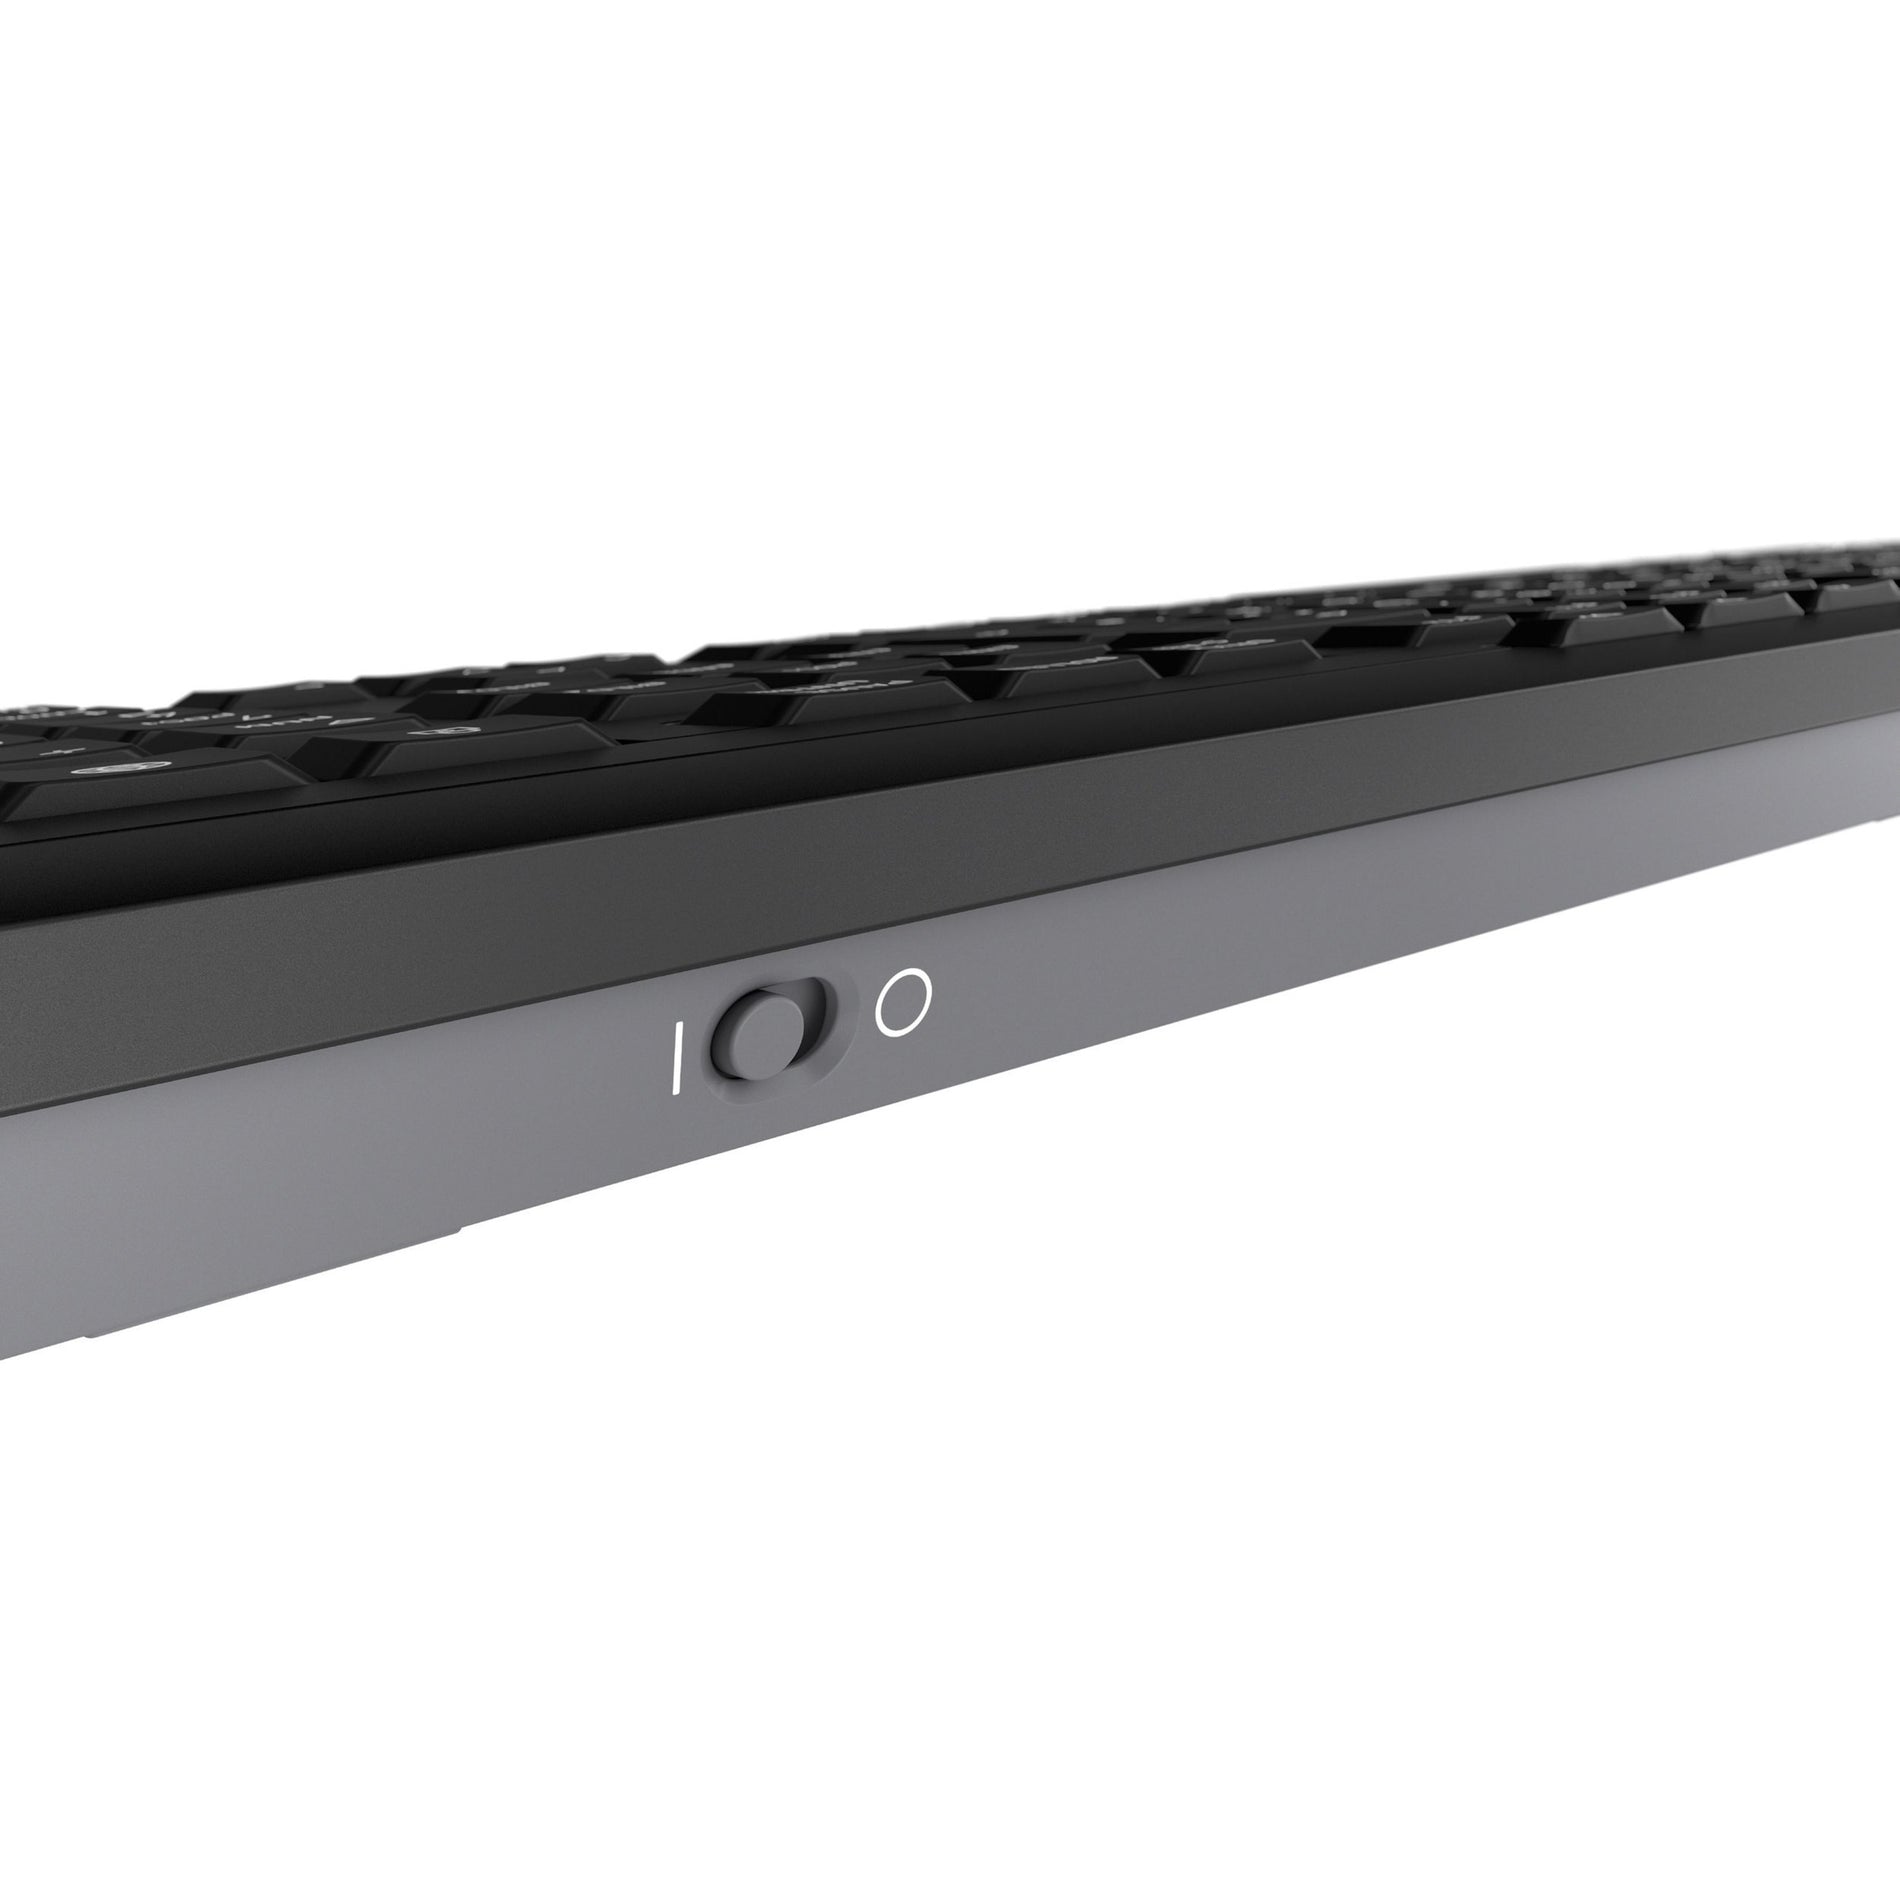 CHERRY JD-8500EU-2 STREAM DESKTOP Wireless Keyboard and Mouse, Quiet Keys, Full-size, 3-Year Warranty